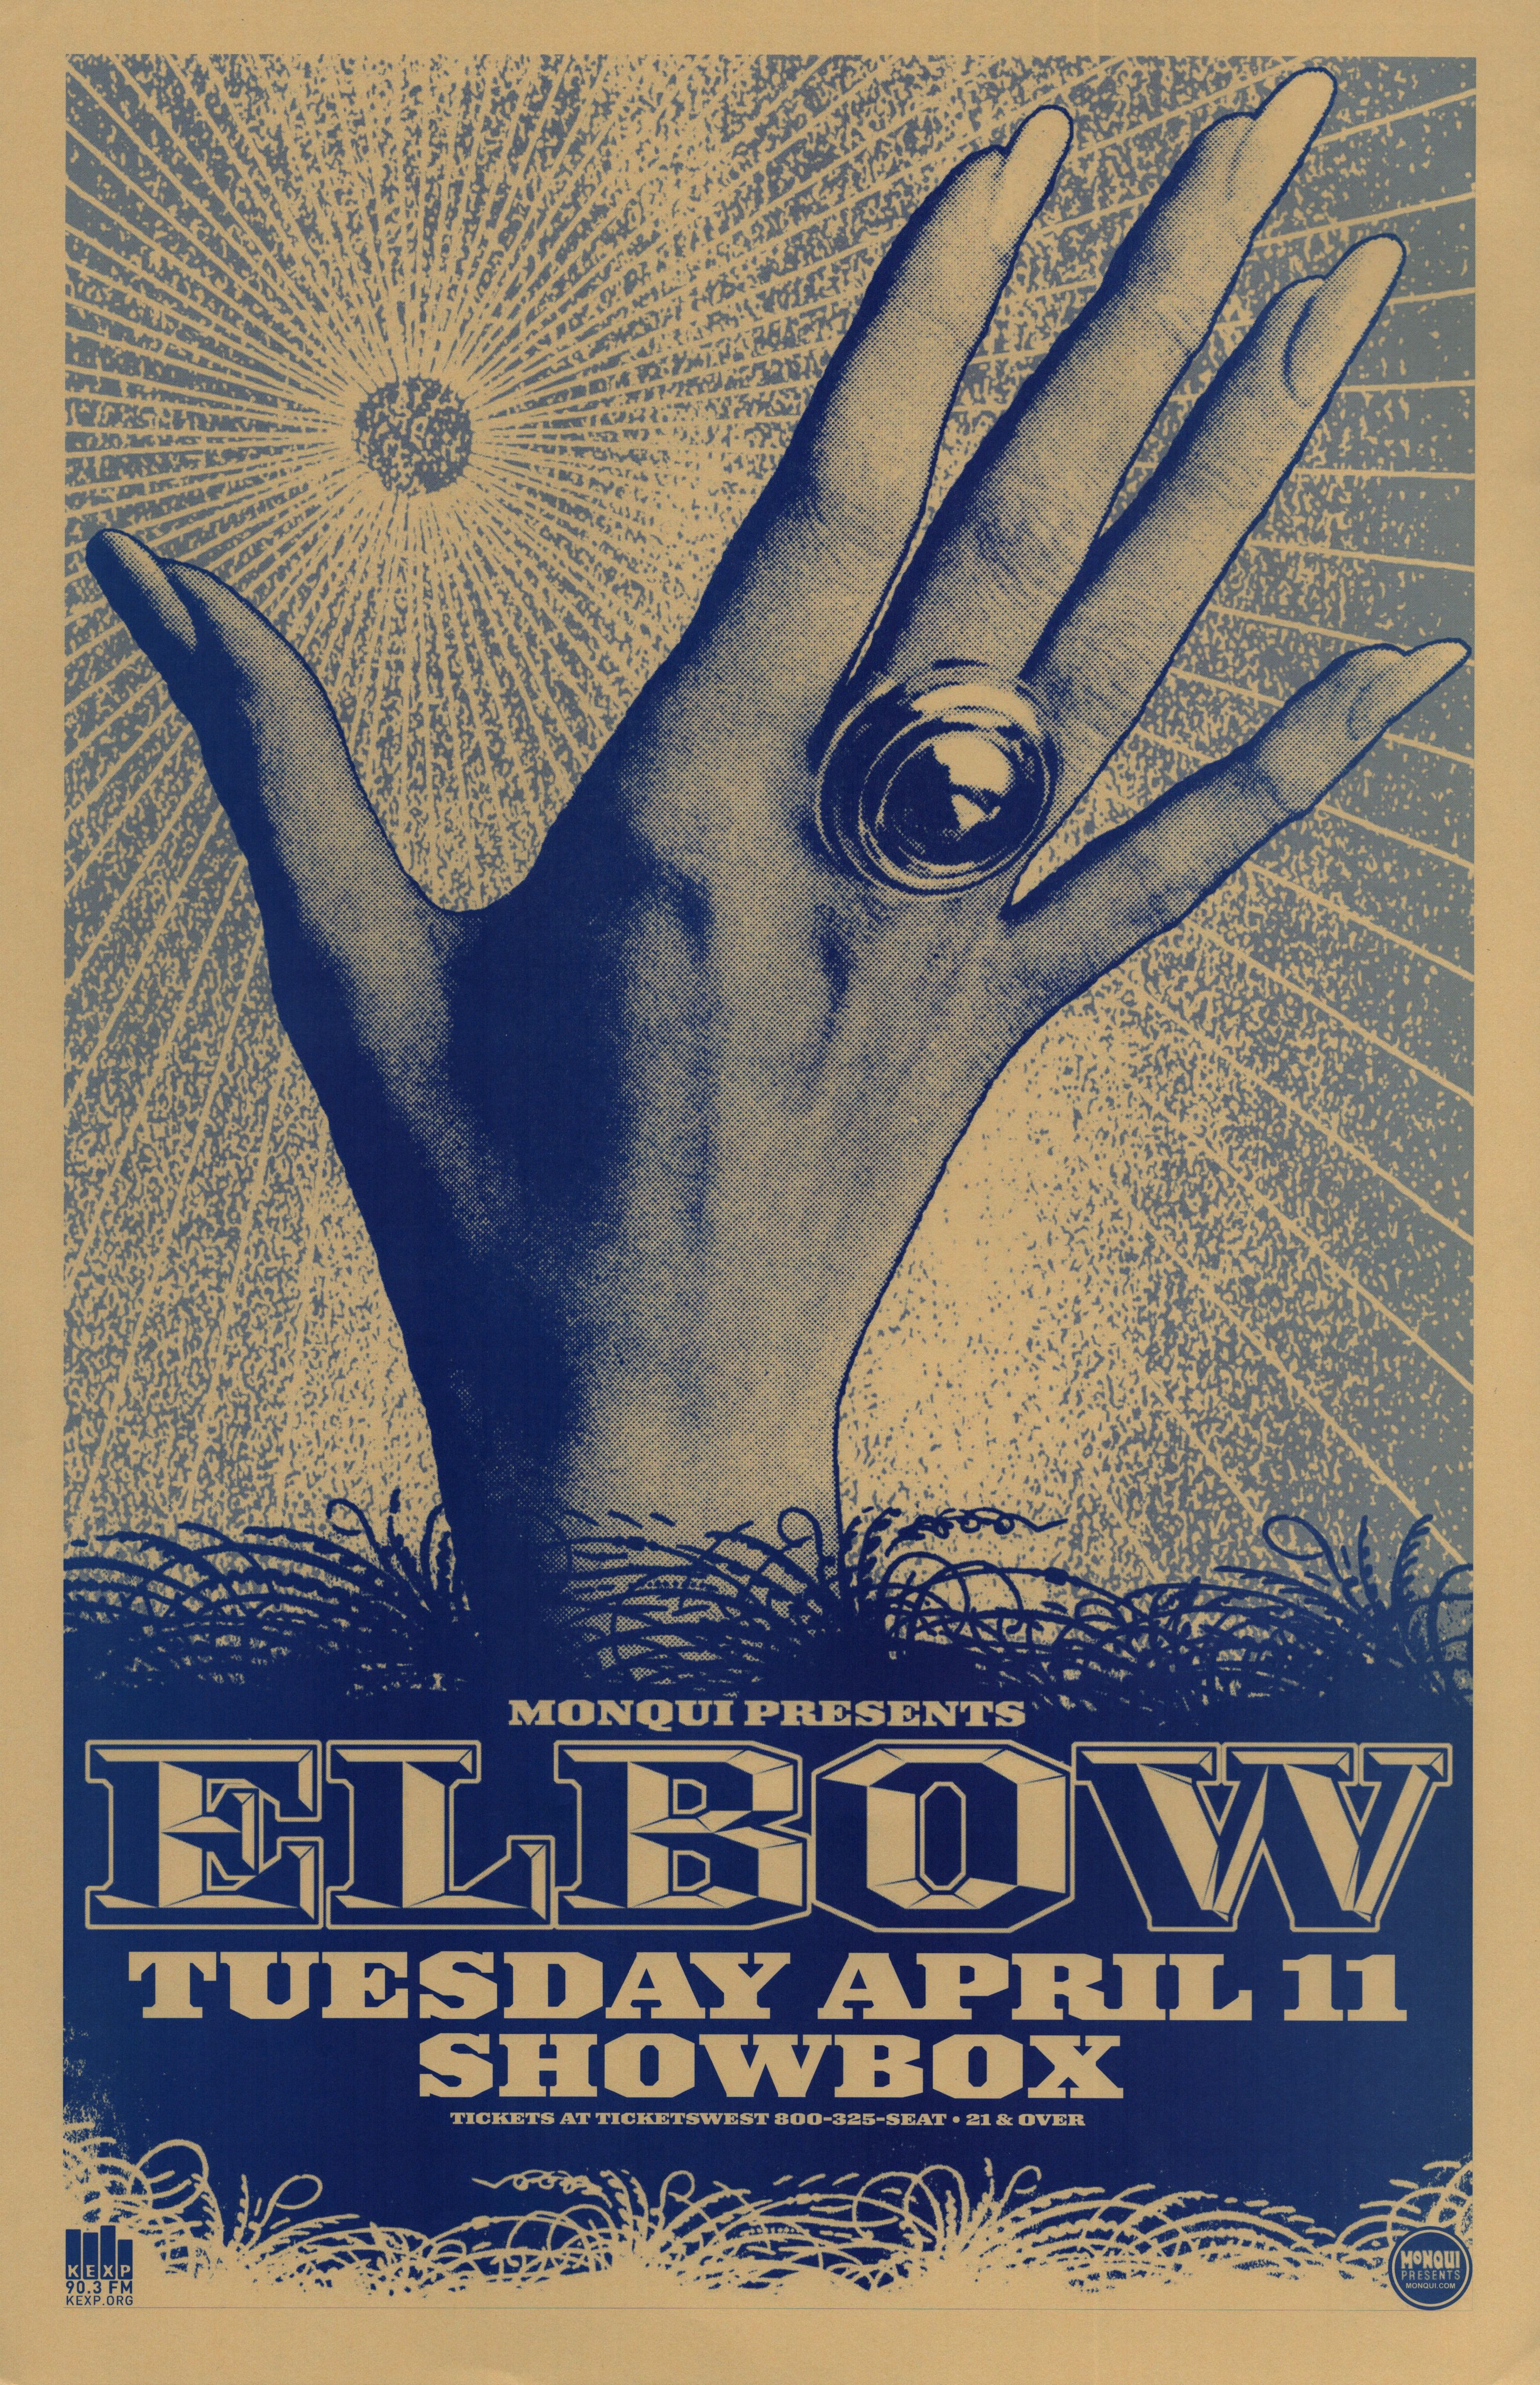 MXP-226.5 Elbow 2006 Showbox  Apr 11 Concert Poster